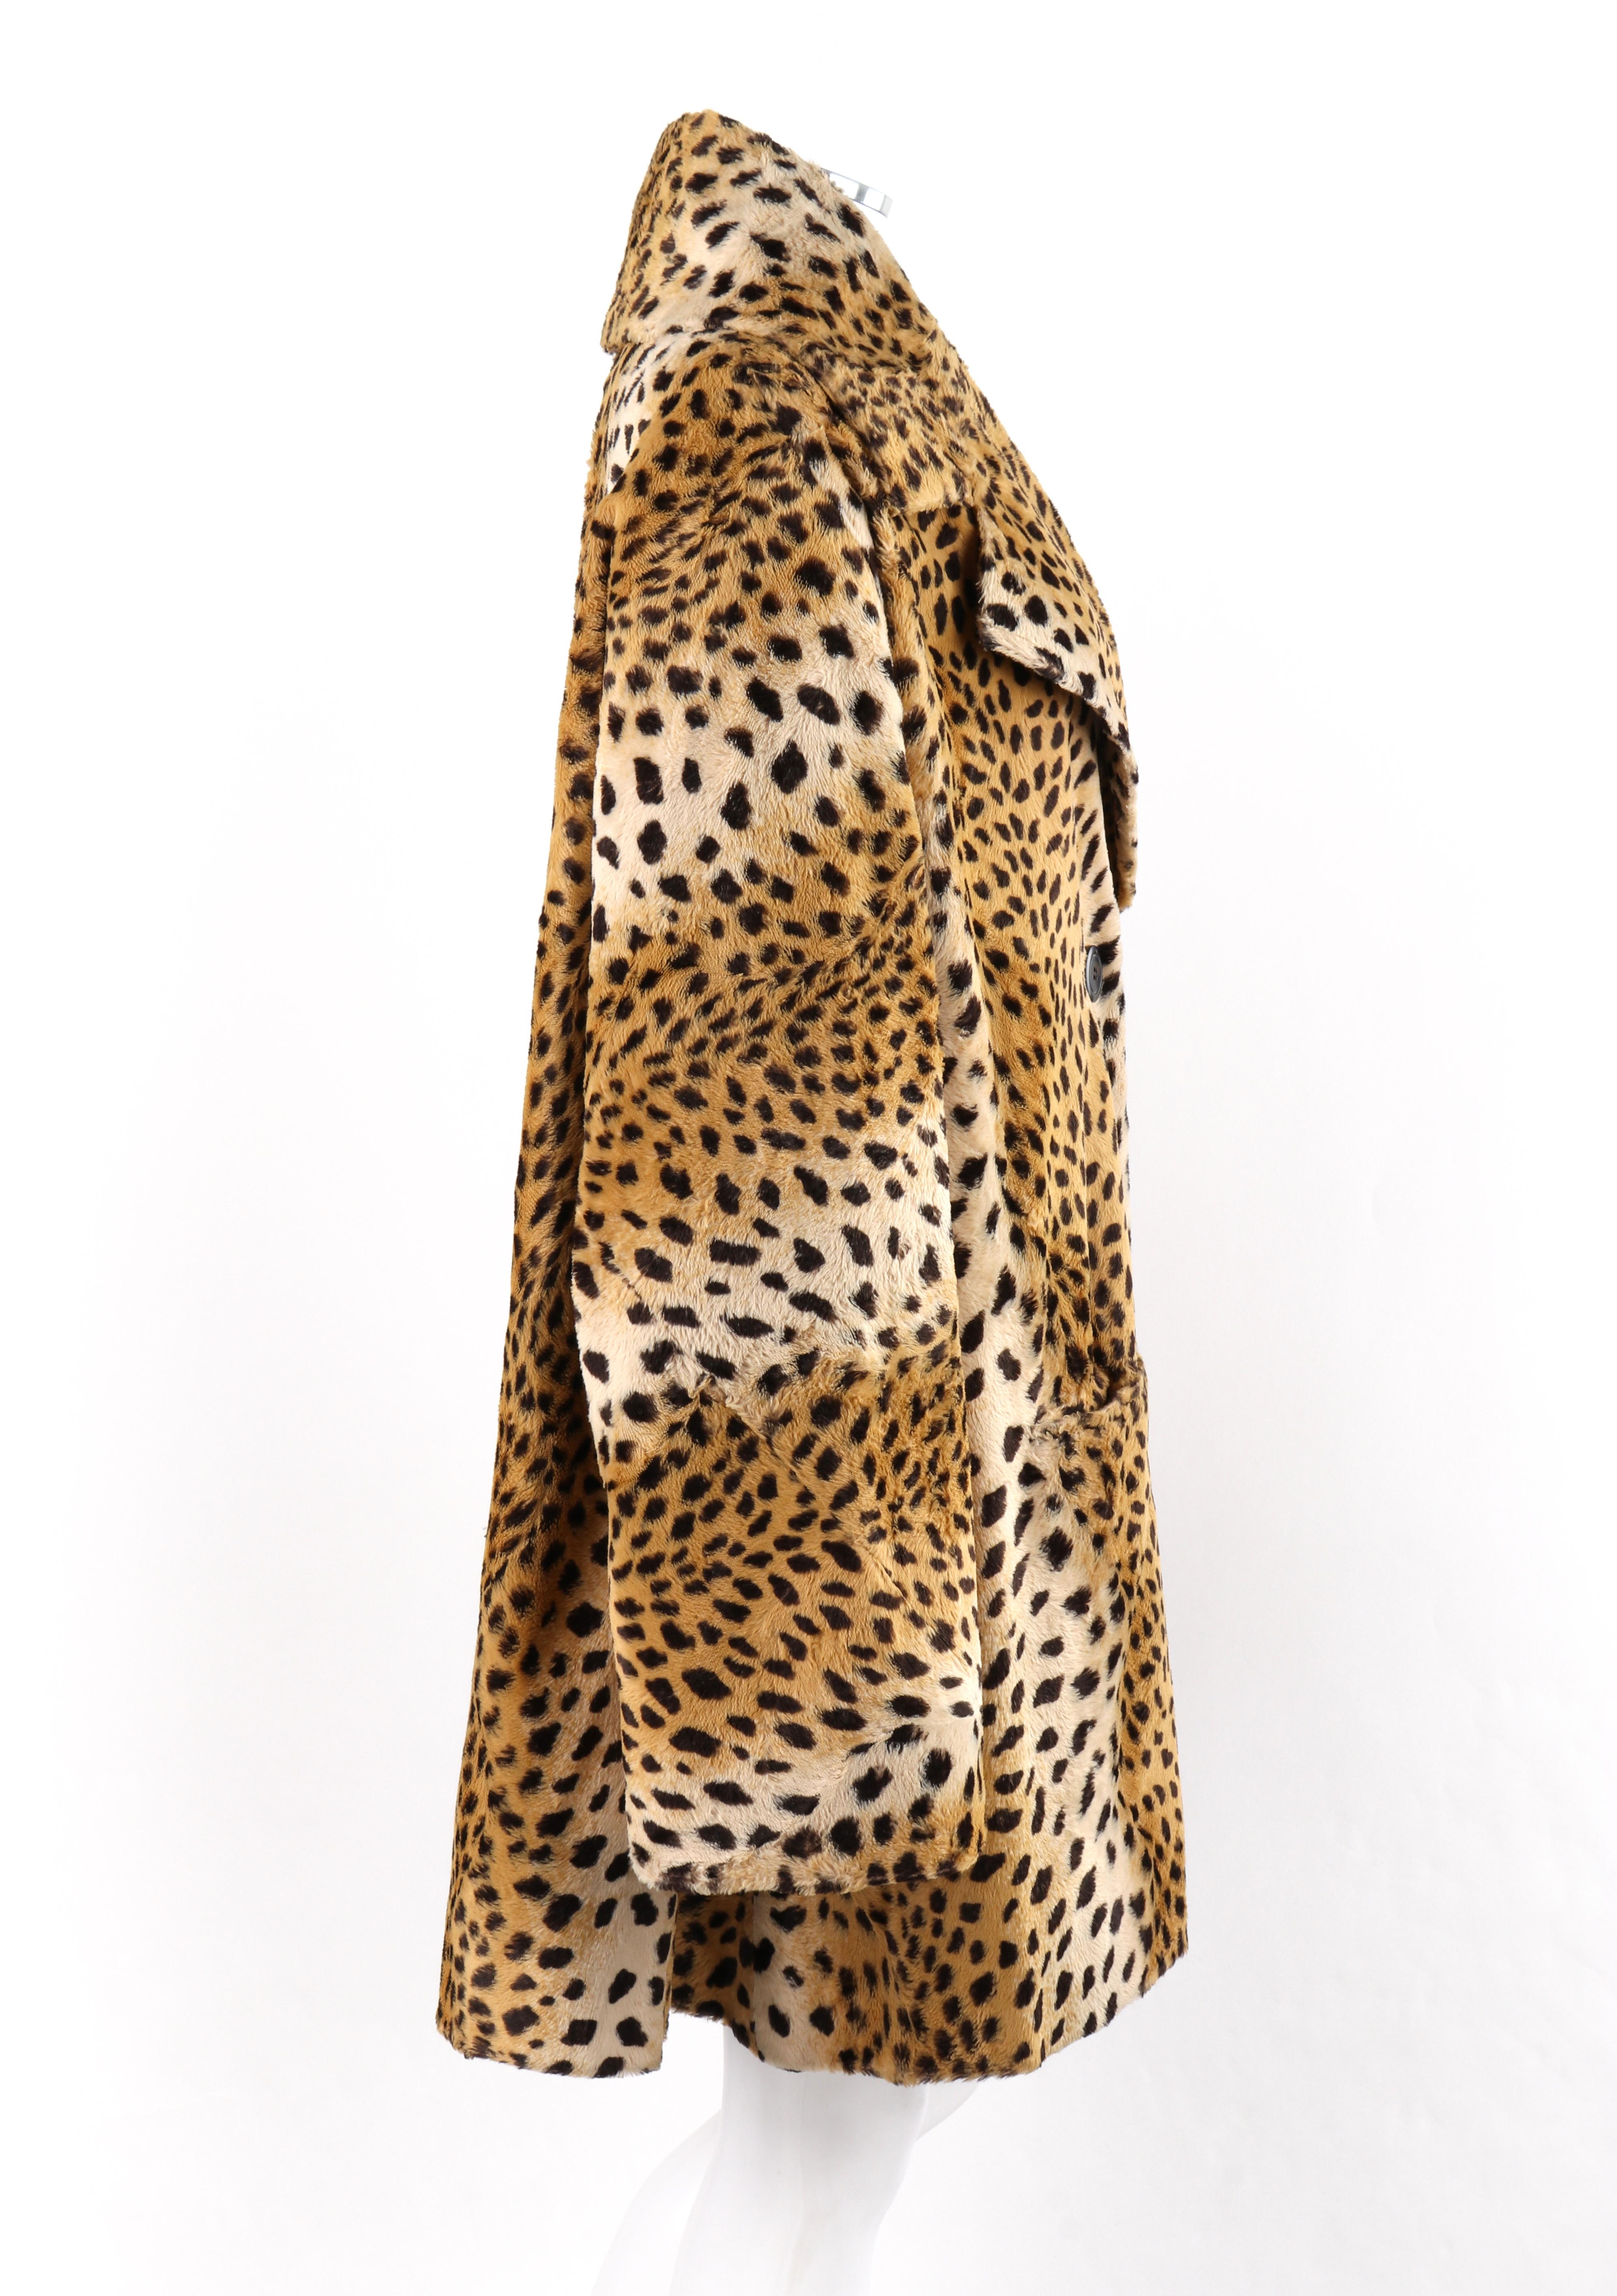 topshop leopard print coat